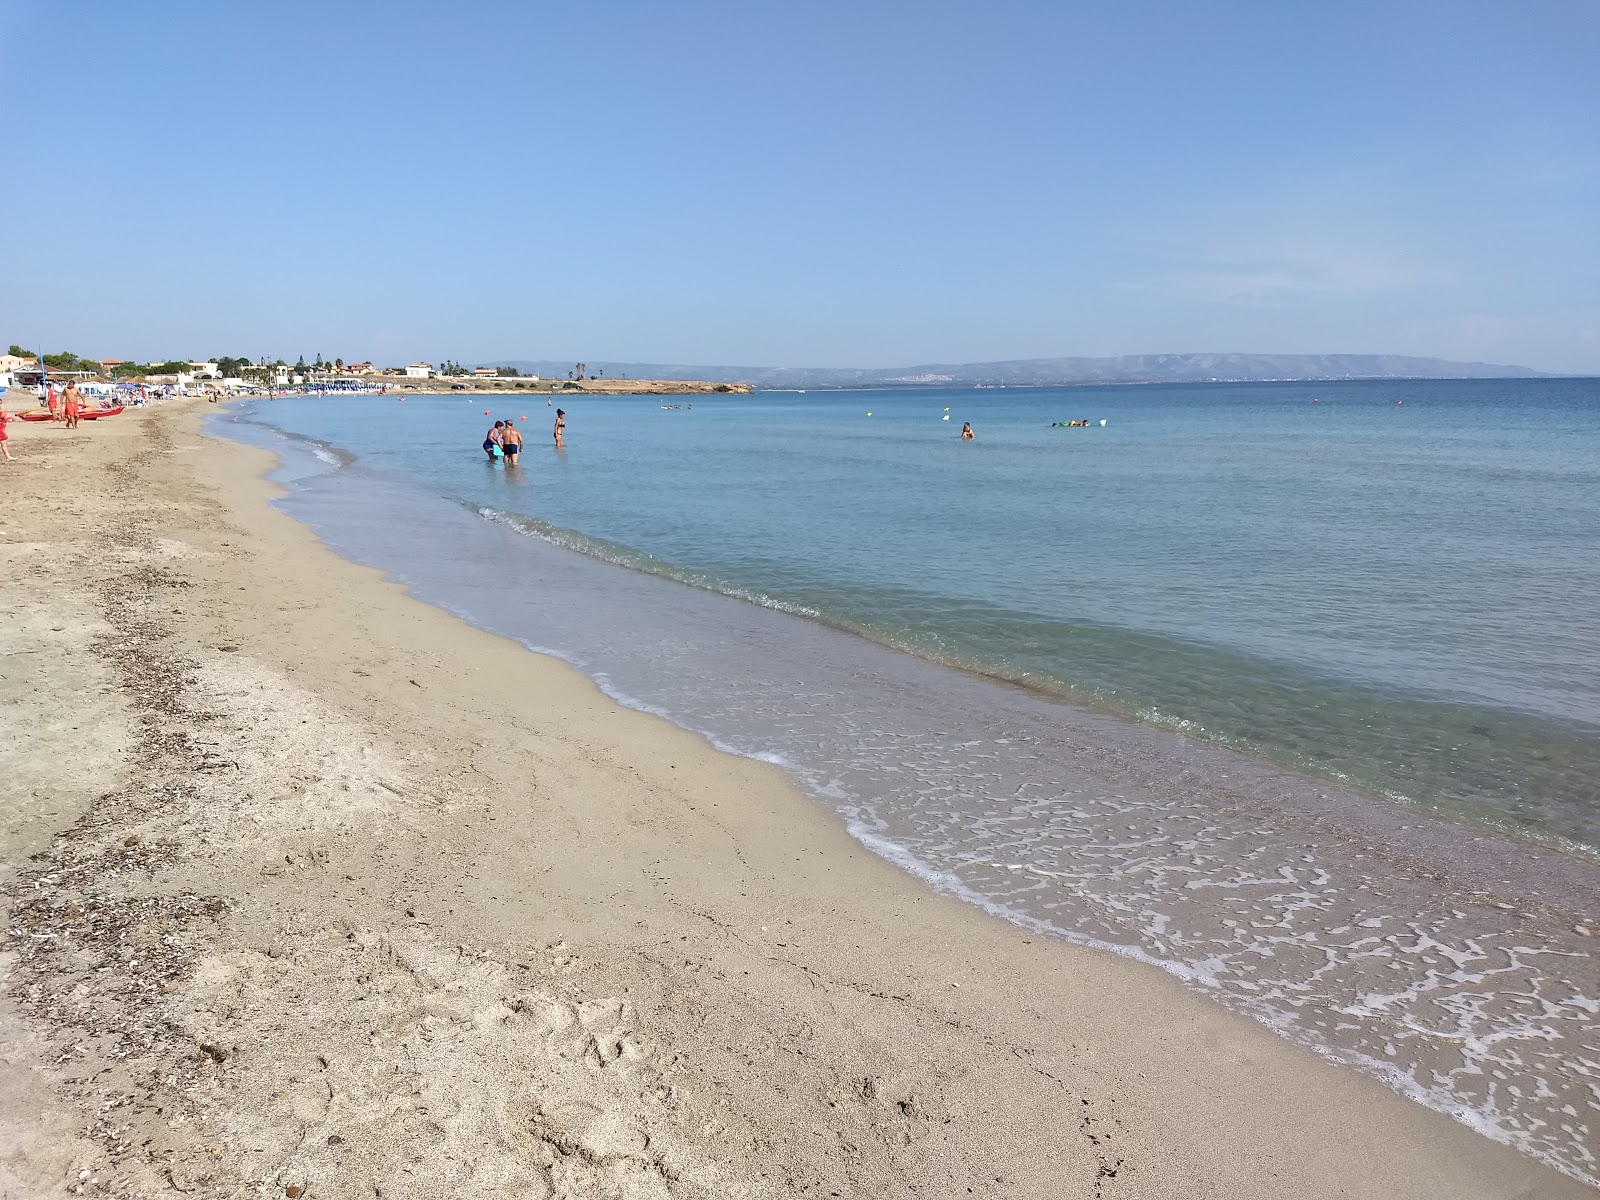 Spinazza Marzamemi'in fotoğrafı kahverengi kum yüzey ile